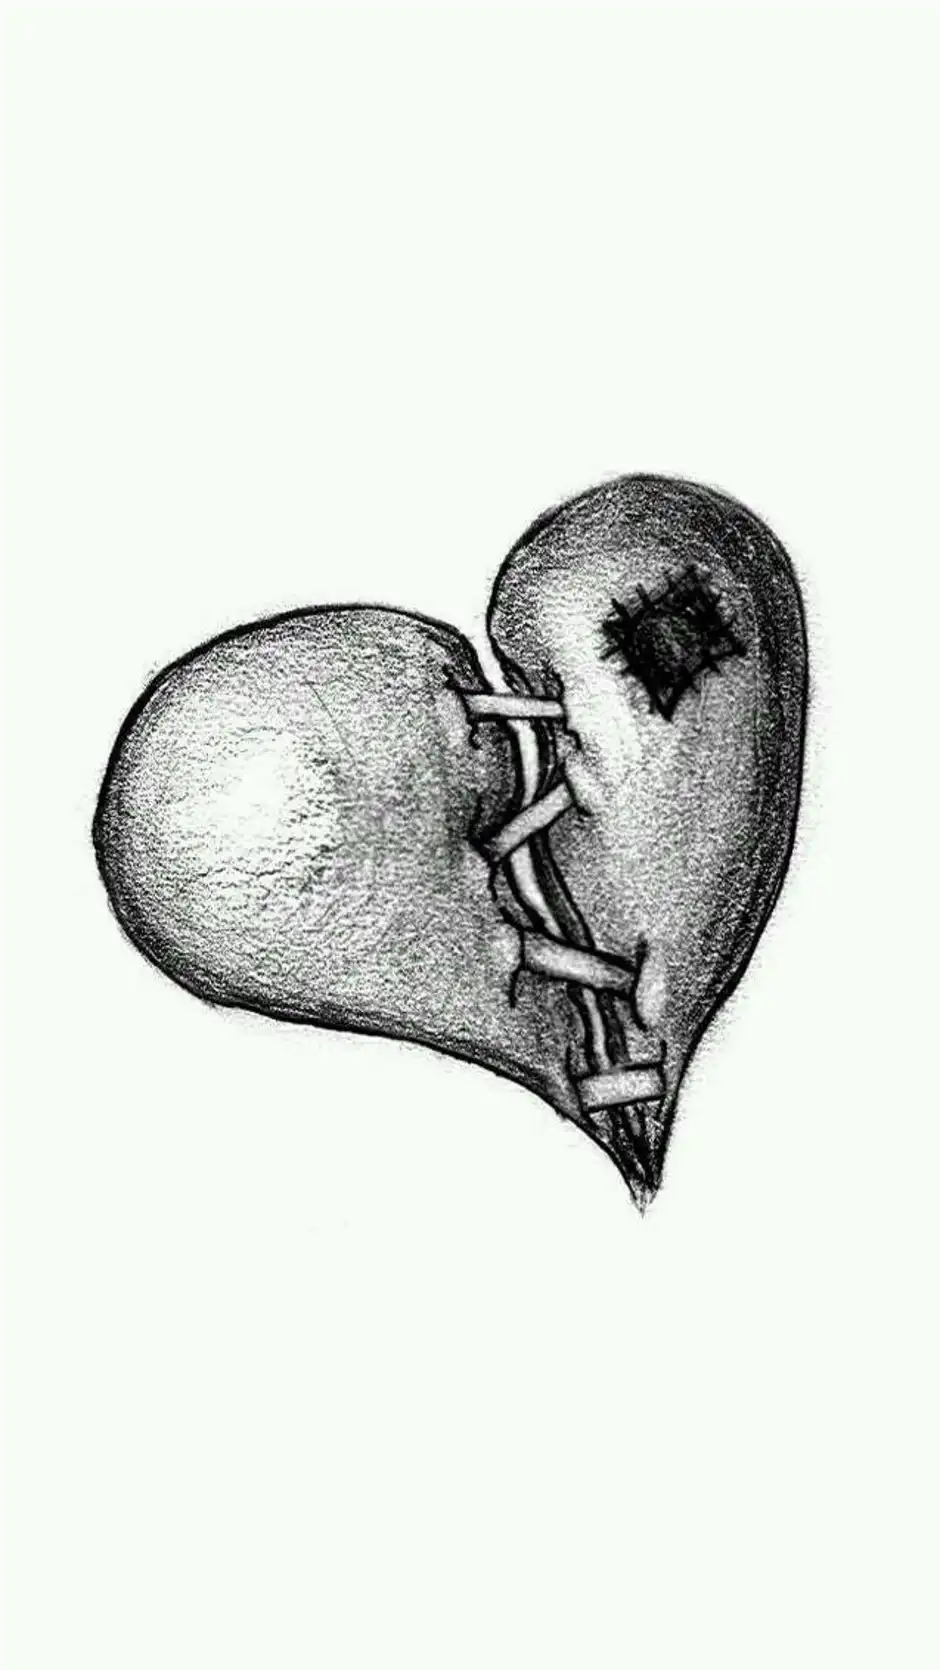 черно белые картинки разбитого сердца